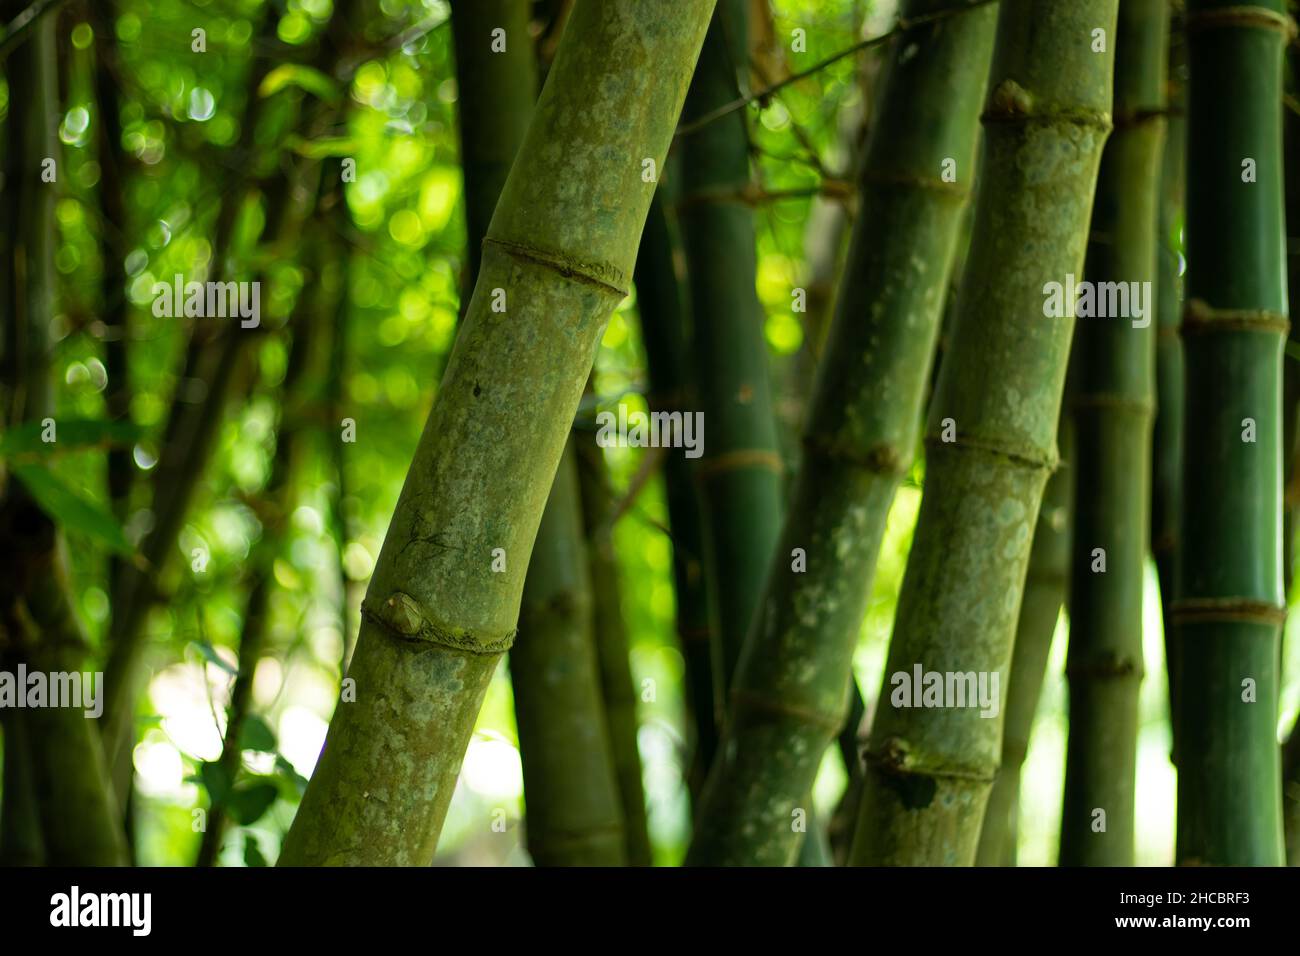 El bambú es una planta leñosa con un tallo hueco que pertenece a la familia de las gramíneas. Green RAW Bamboo es una herramienta de integración e implementación continua que se vincula automáticamente Foto de stock